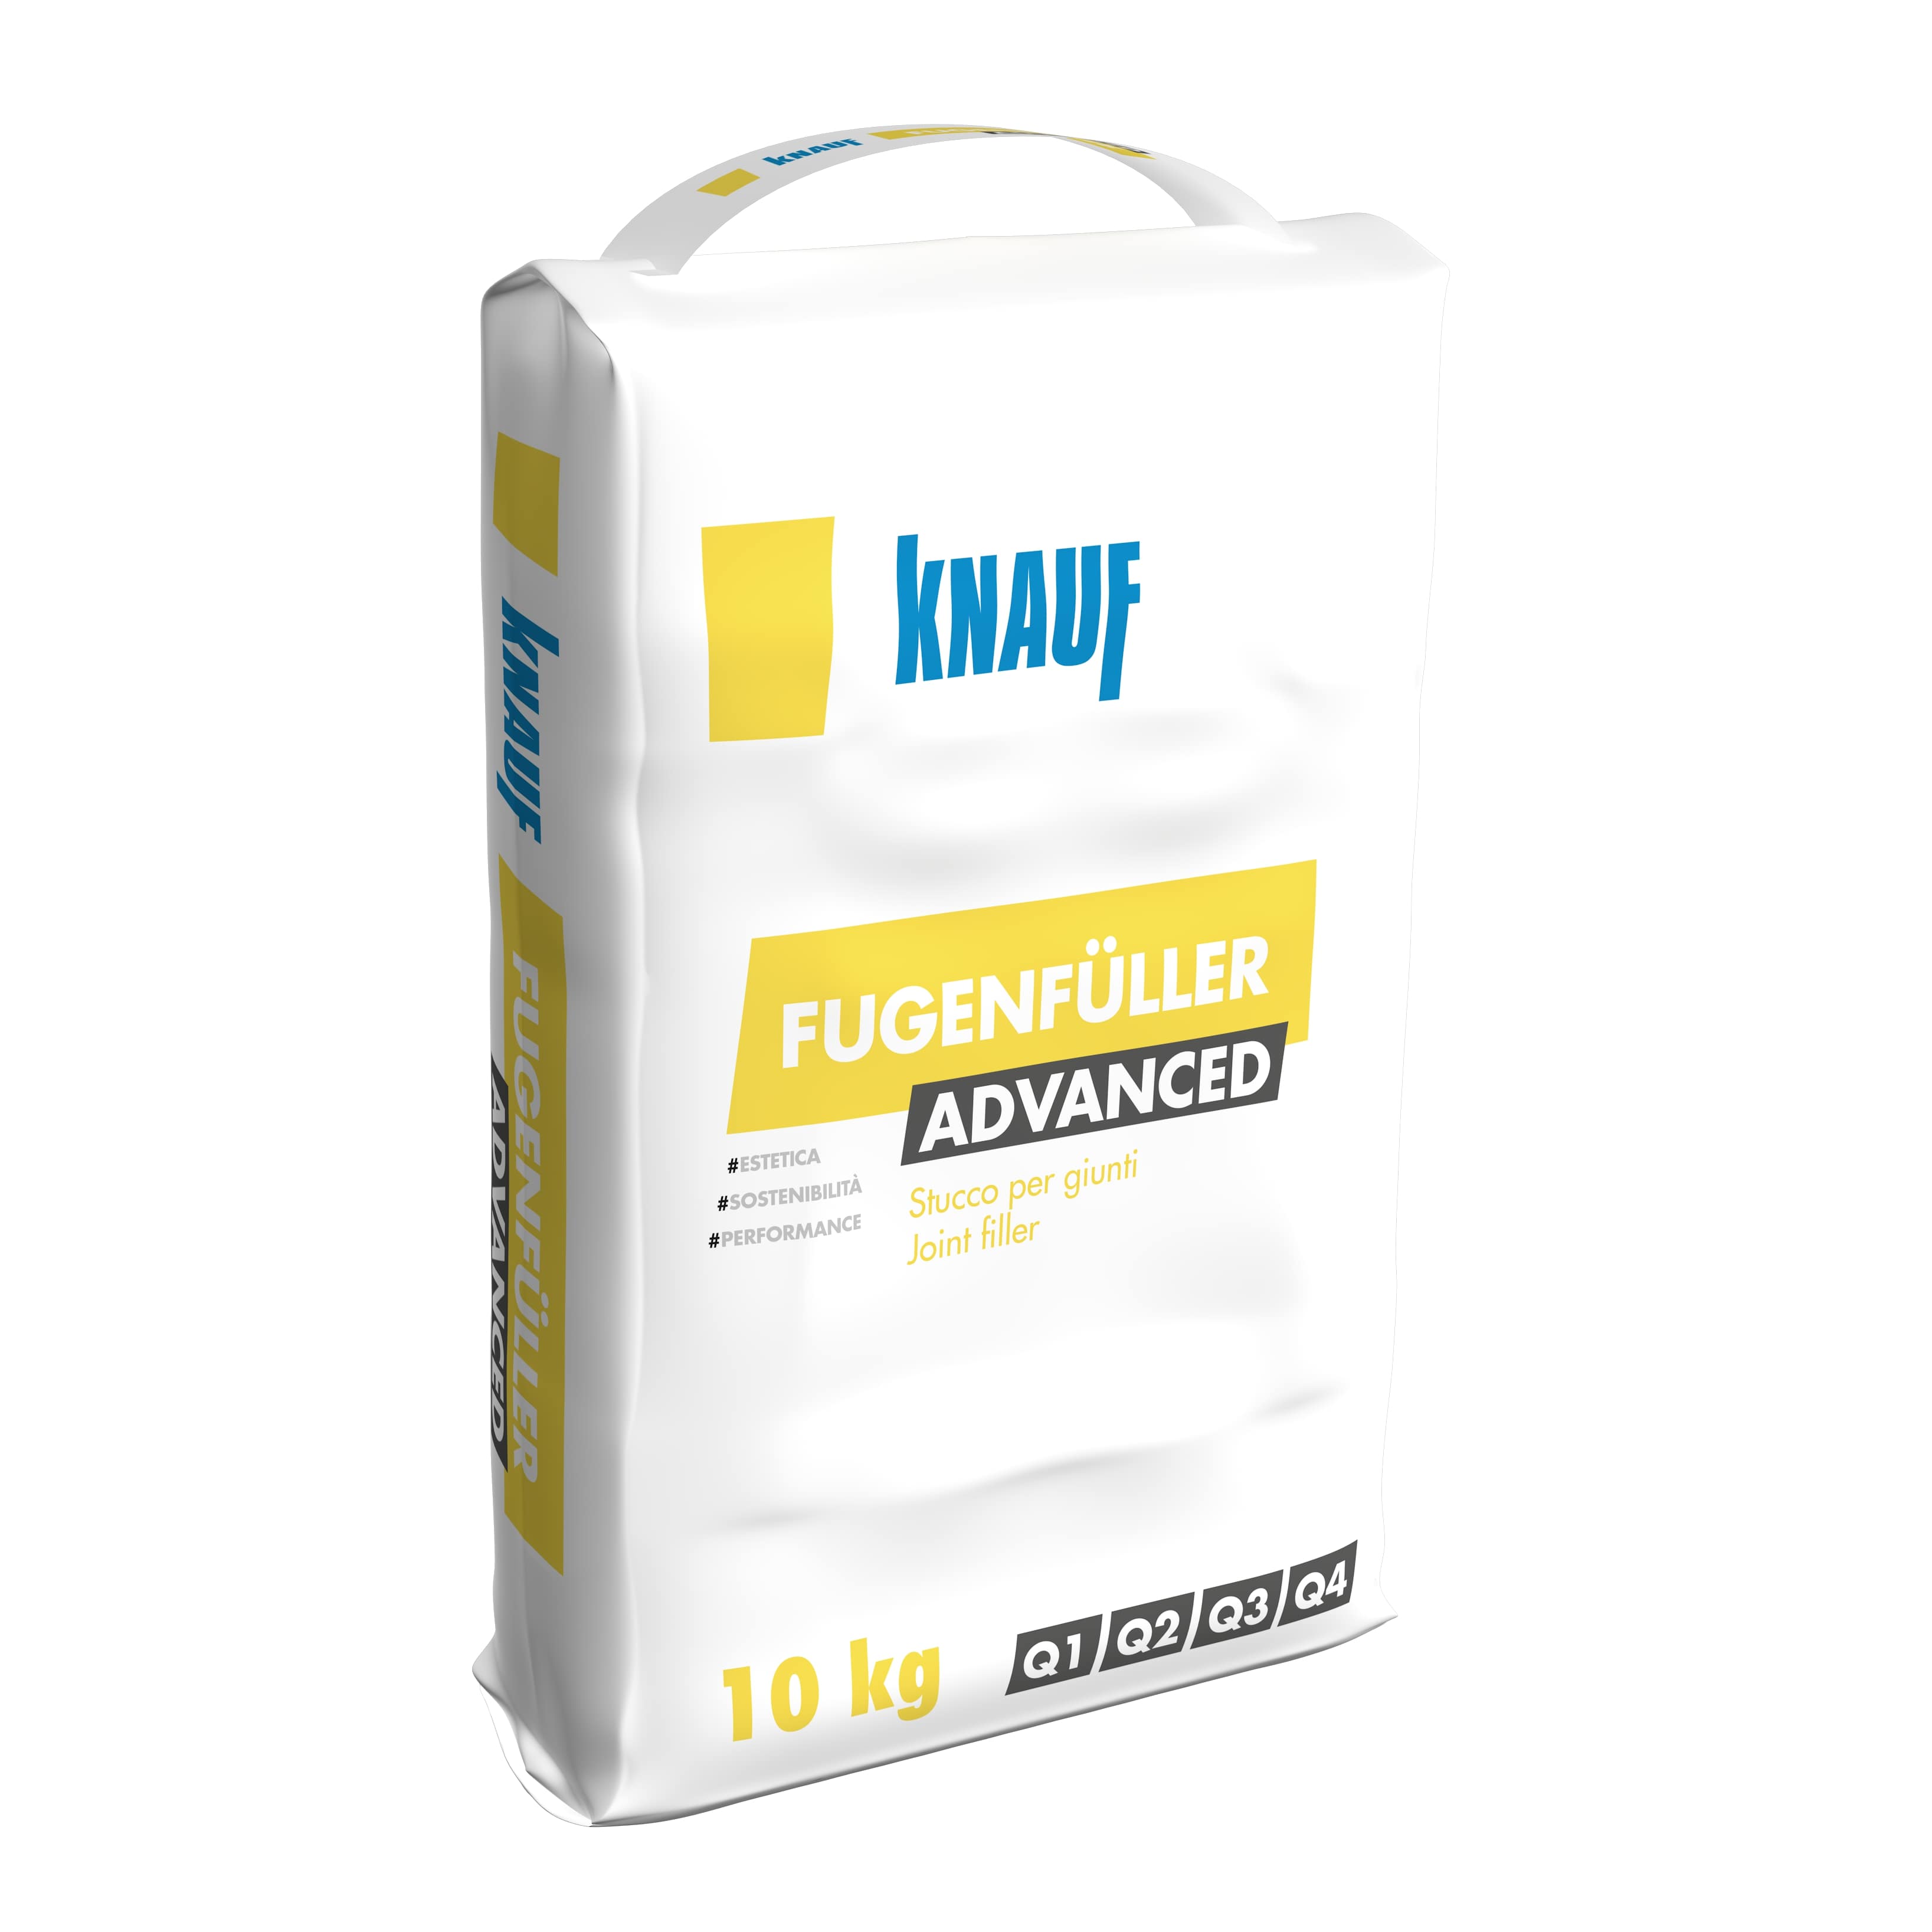 Knauf Italia lancia Fugenfüller Advanced il nuovo standard di qualità nell’arte della stuccatura